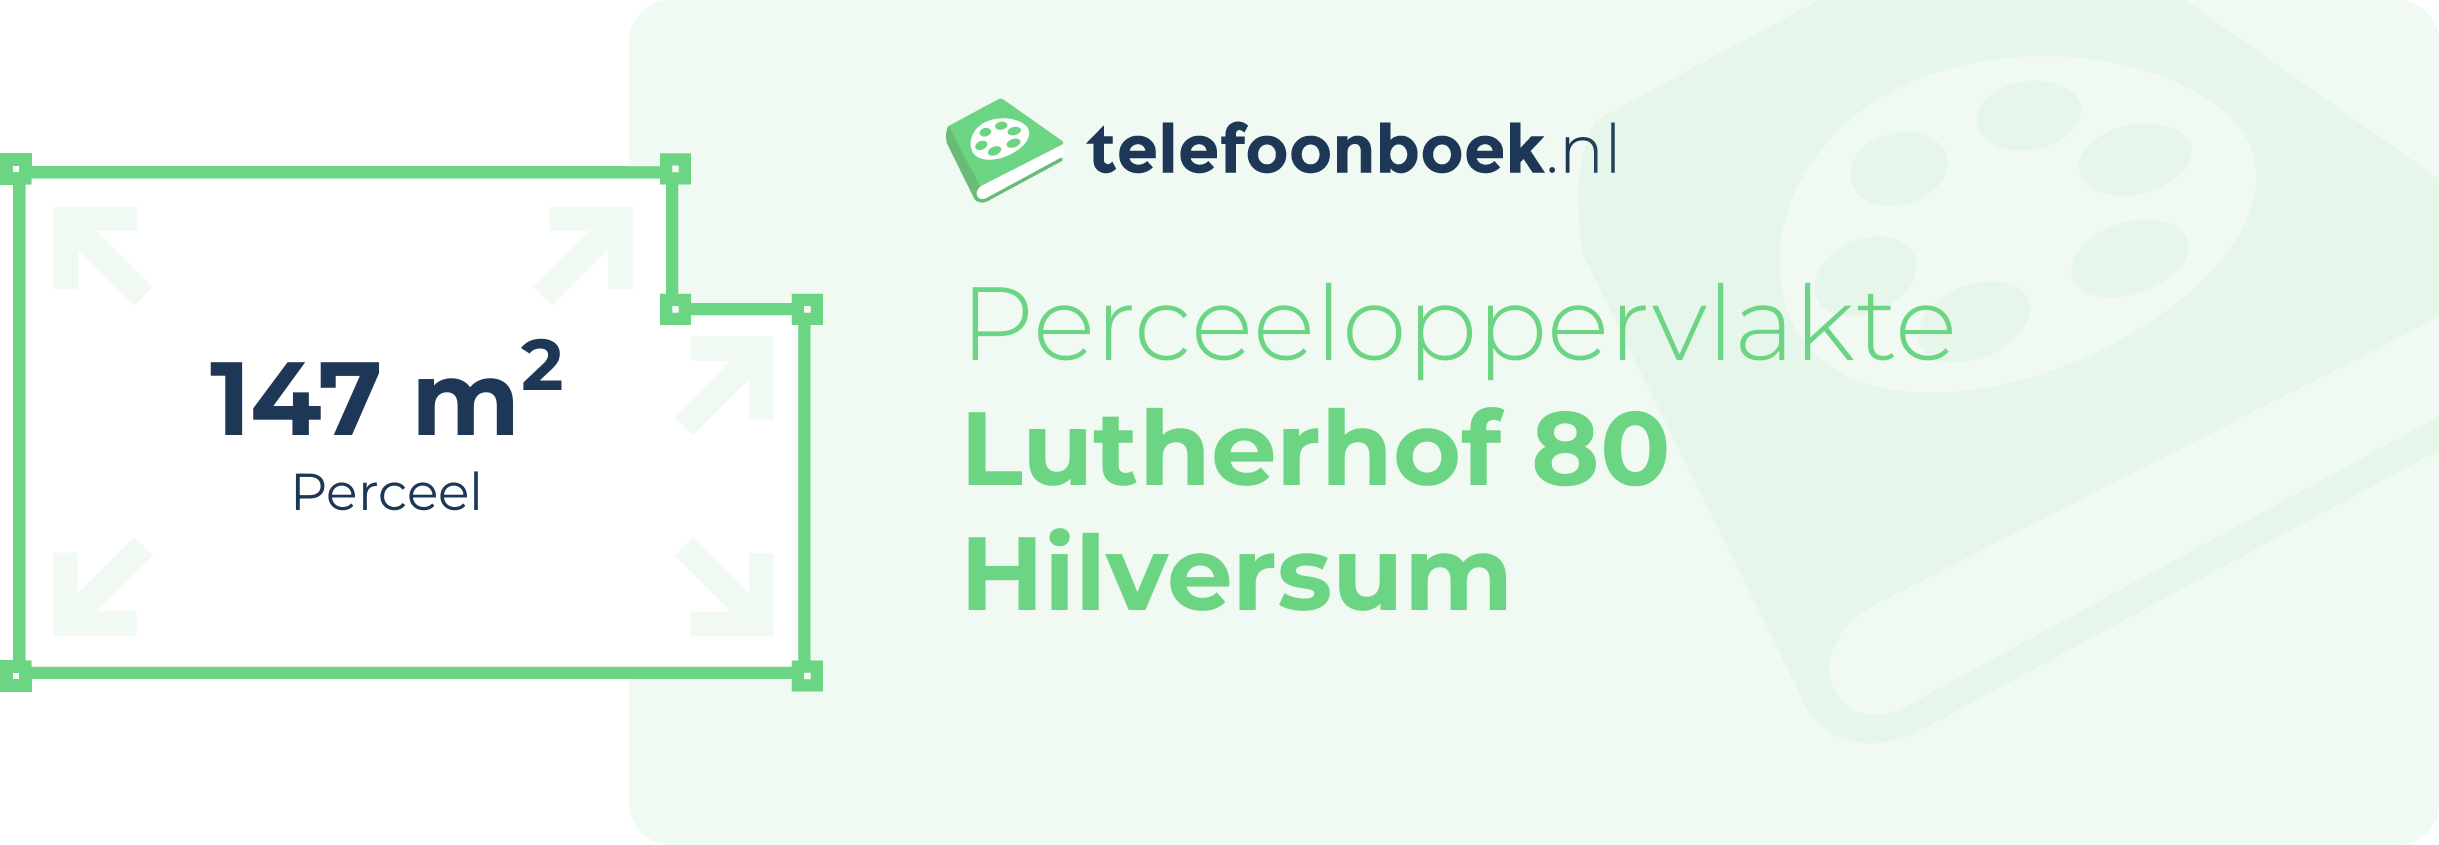 Perceeloppervlakte Lutherhof 80 Hilversum